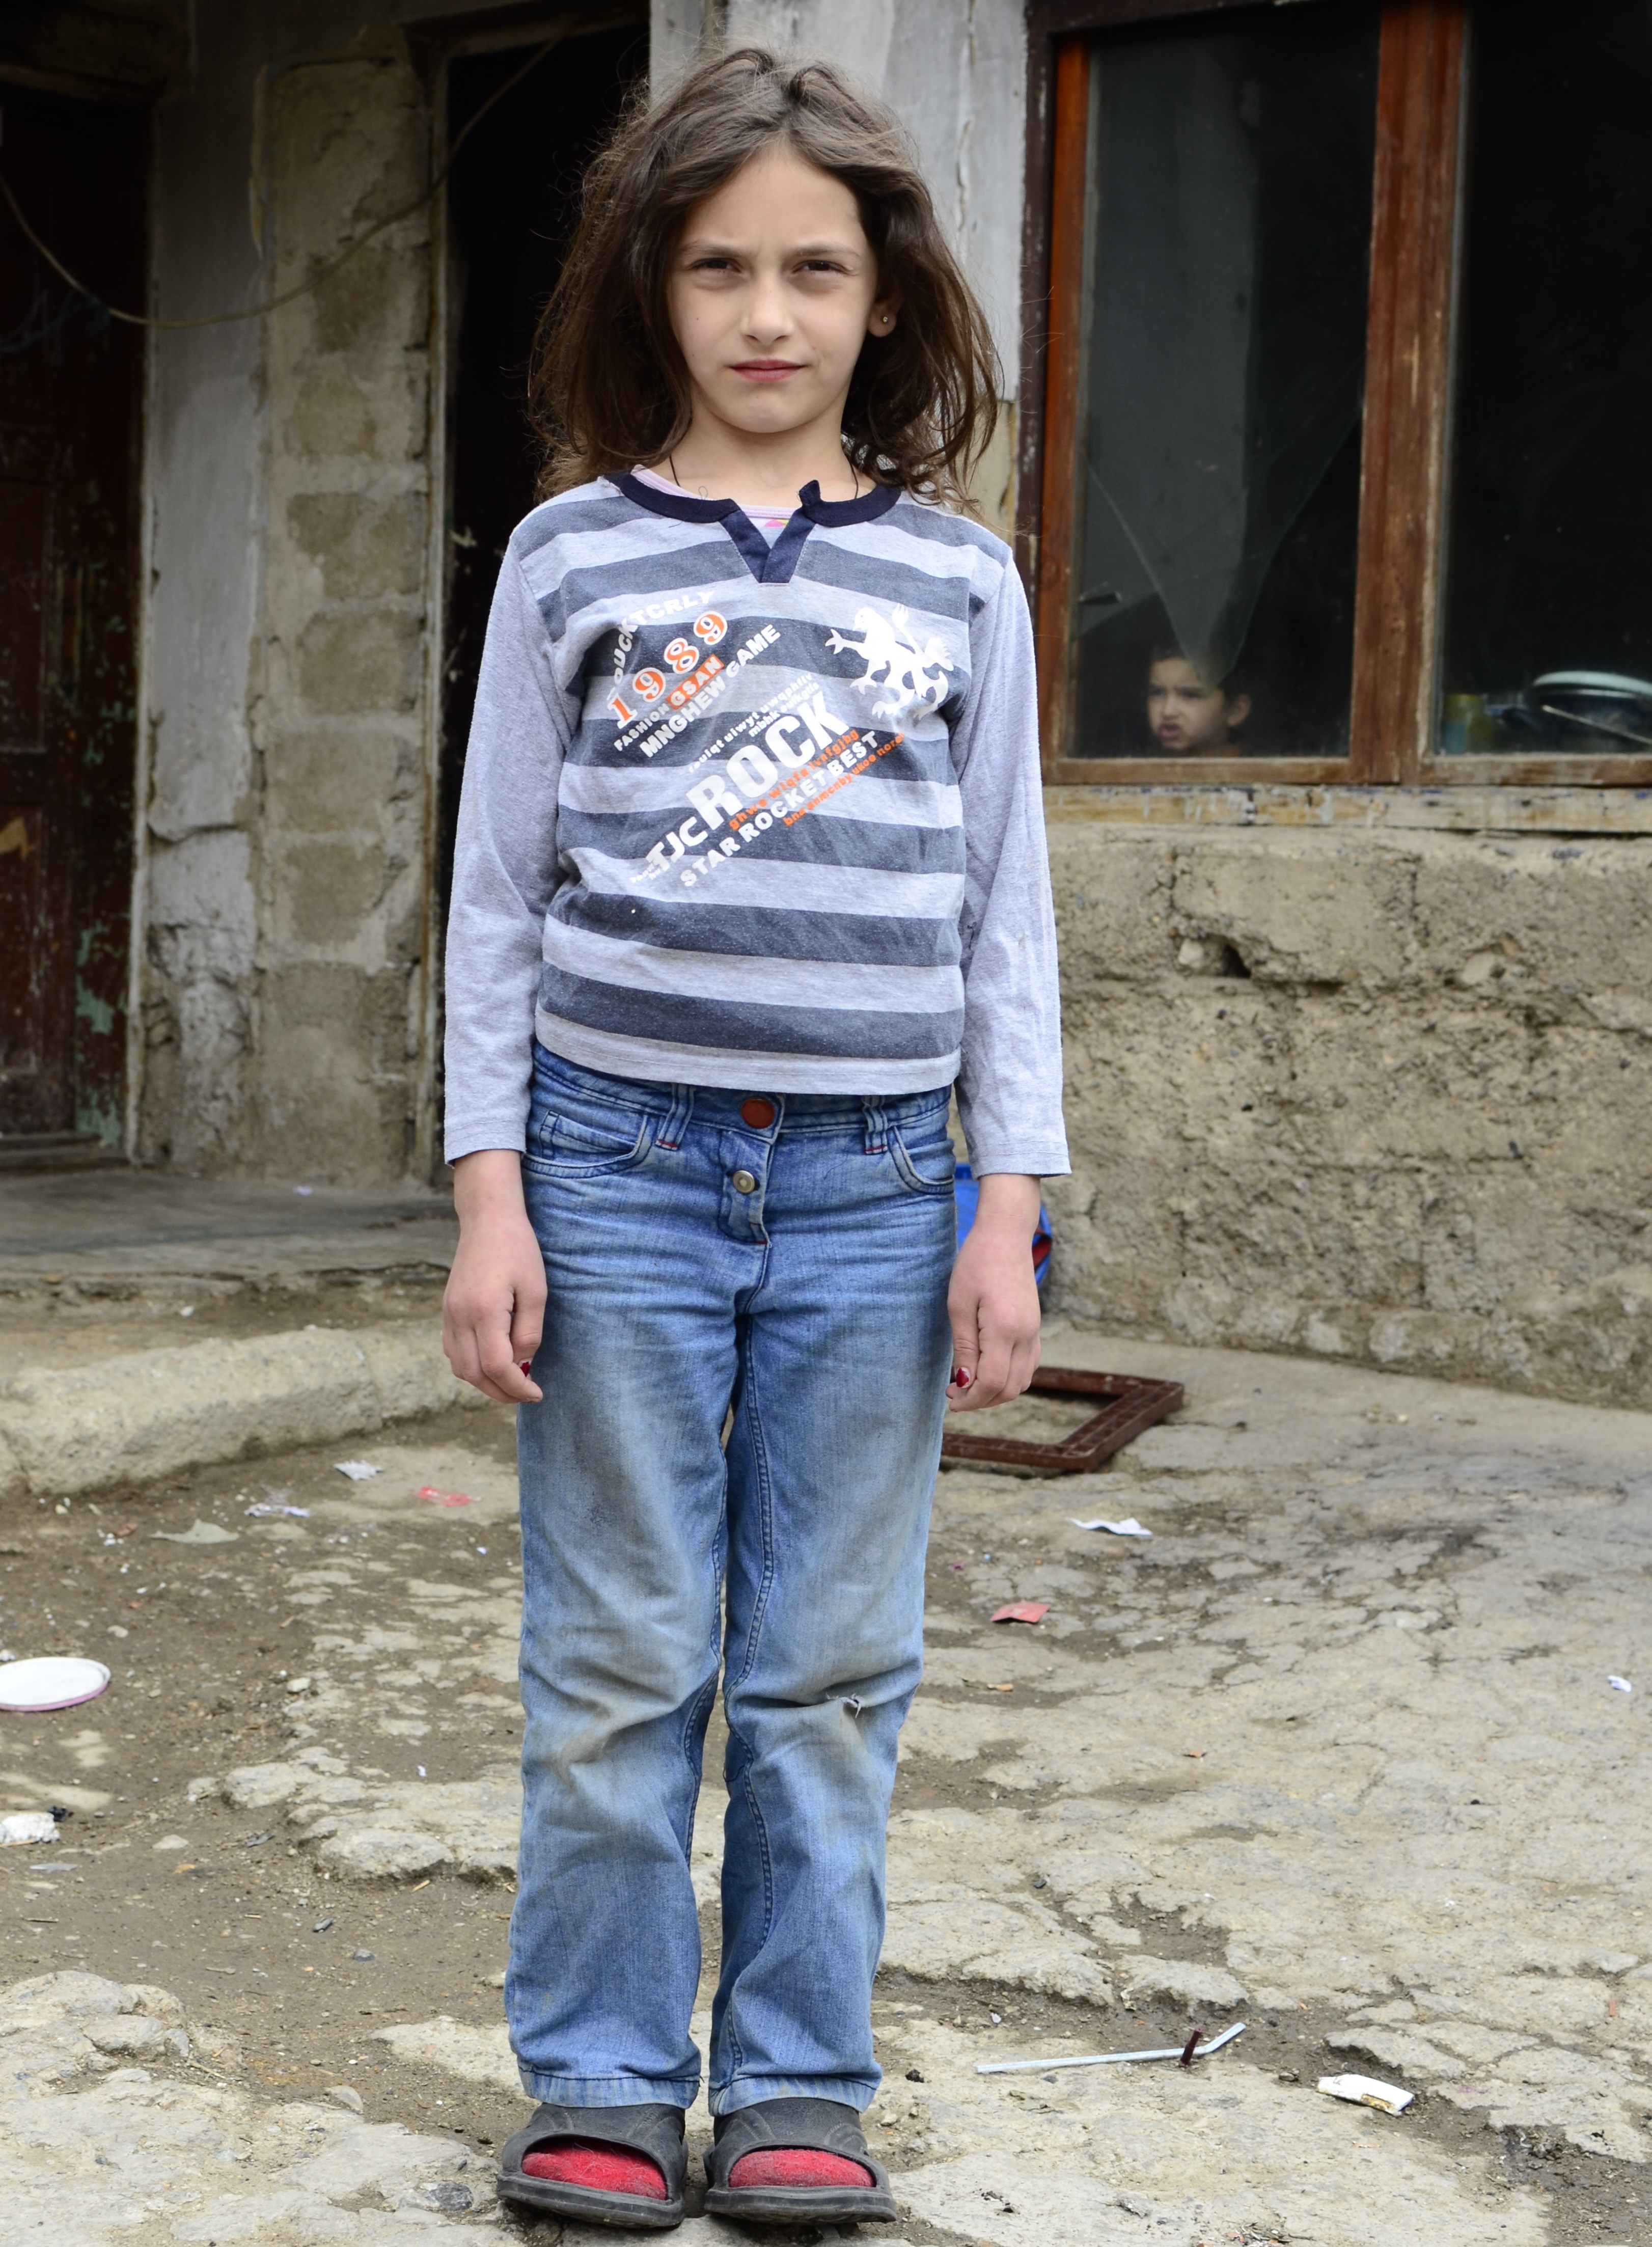 Bonas foreldre er analfabeter. Begge vokste opp i alvorlig fattigdom i Kosovo. 